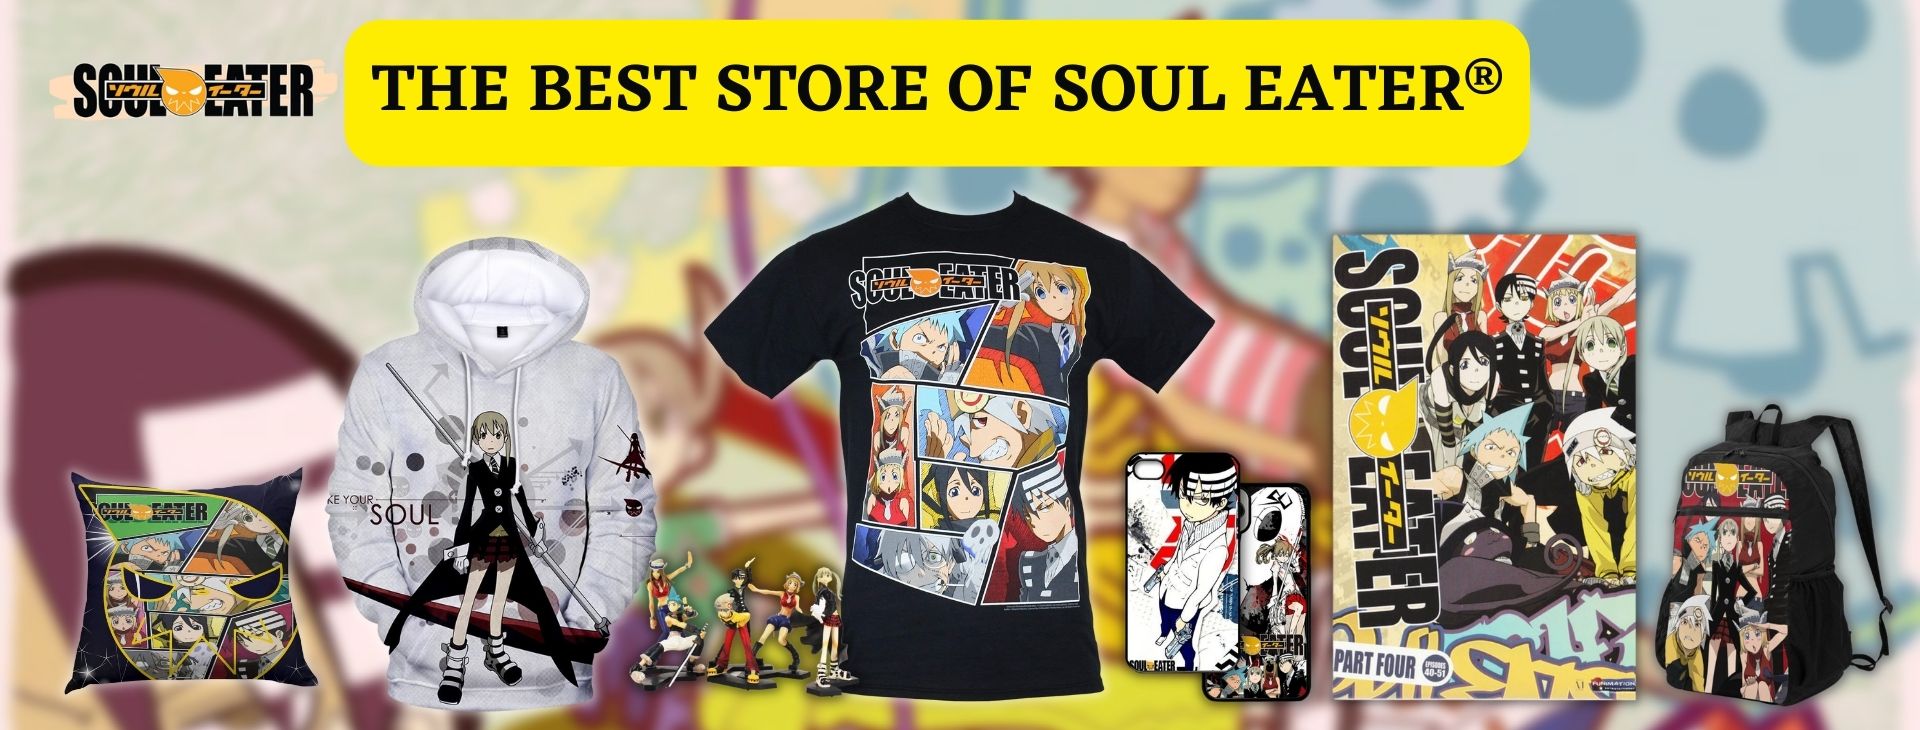 Soul Eater Banner - Soul Eater Store